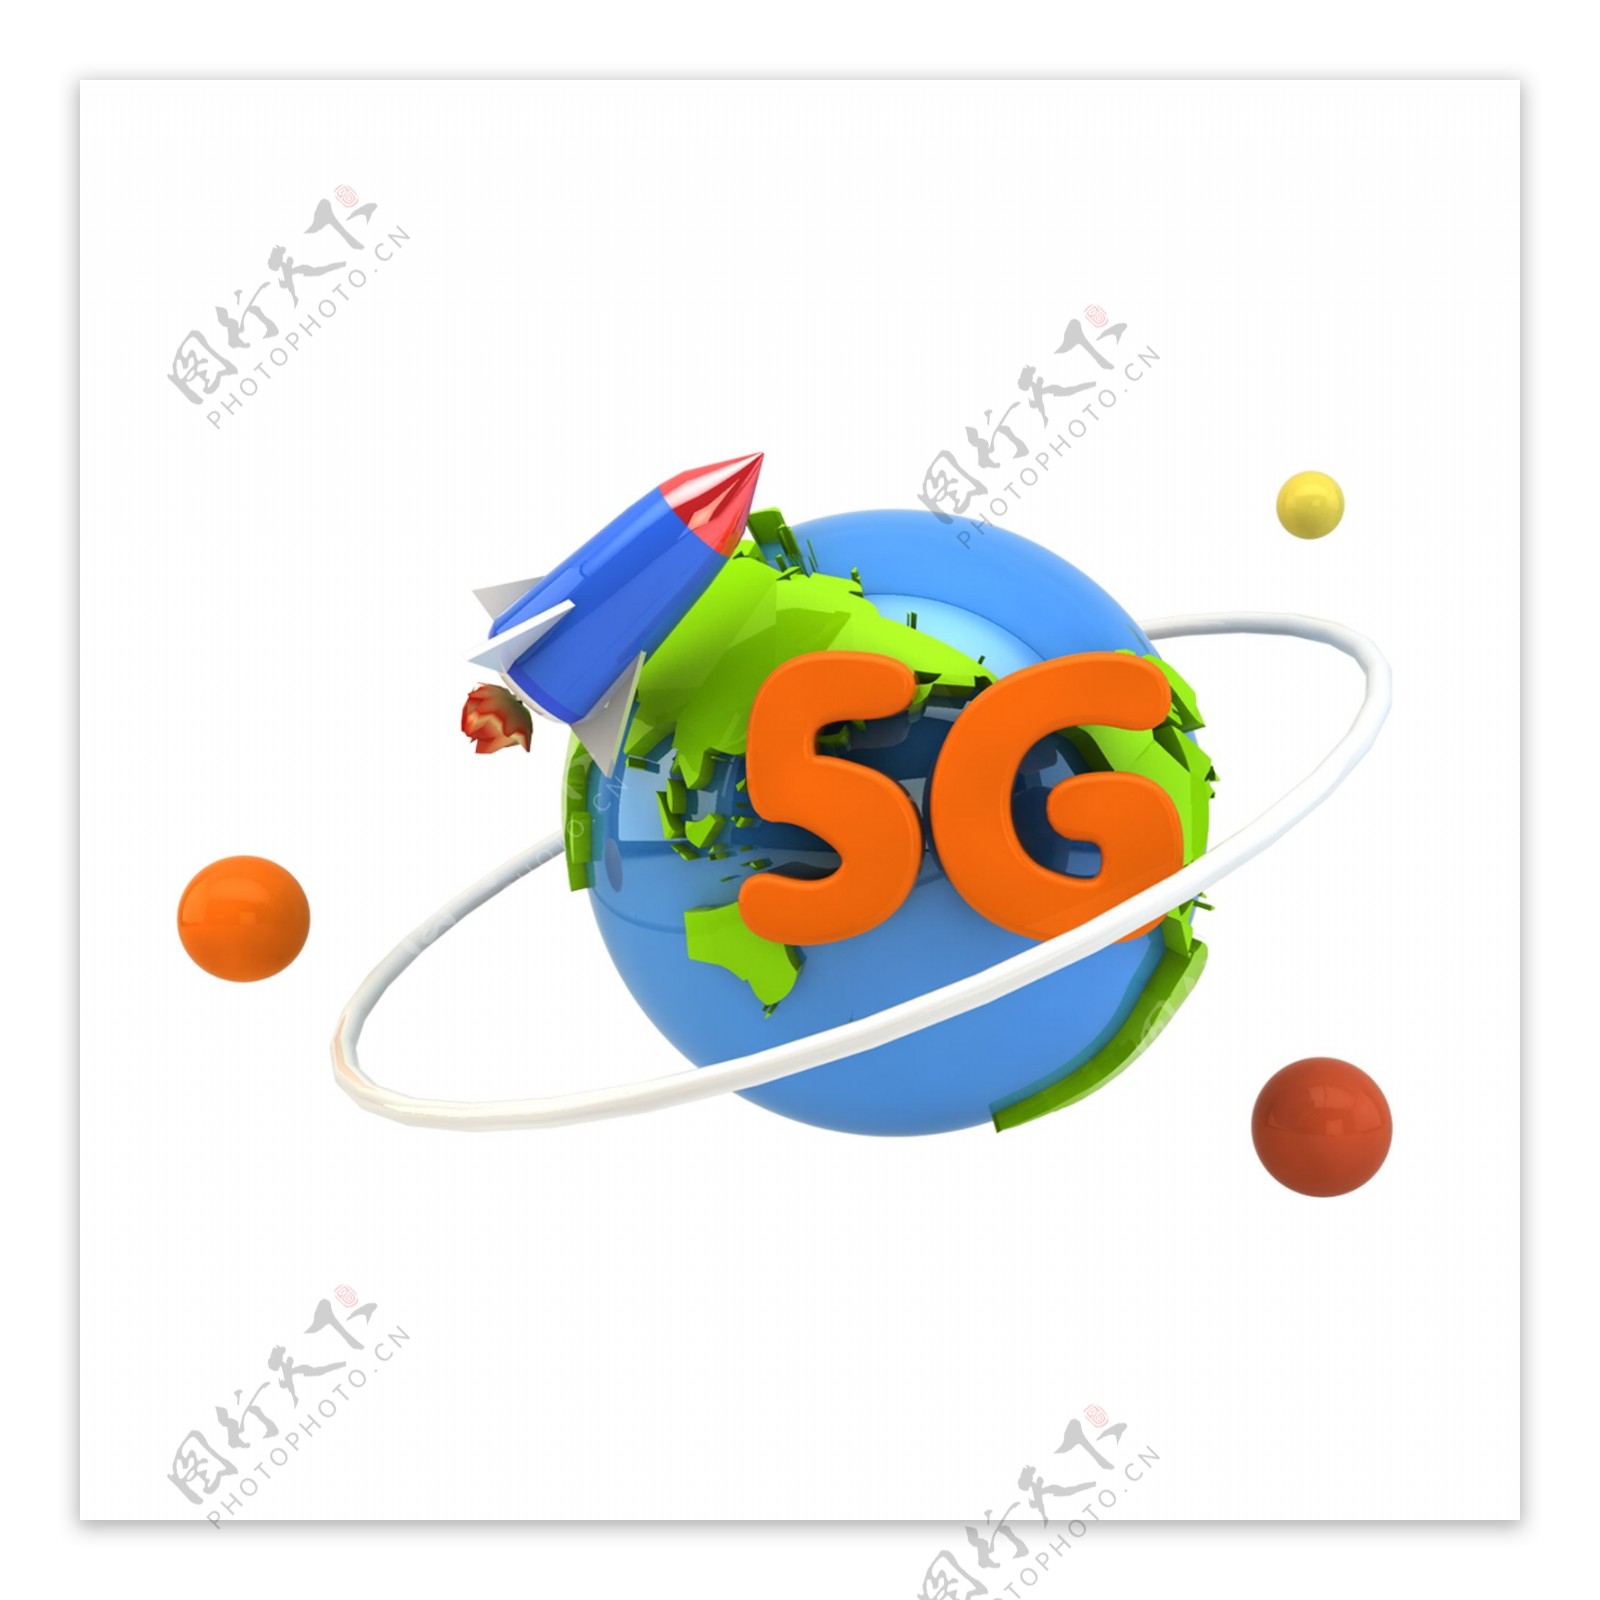 5G网络3D地球素材